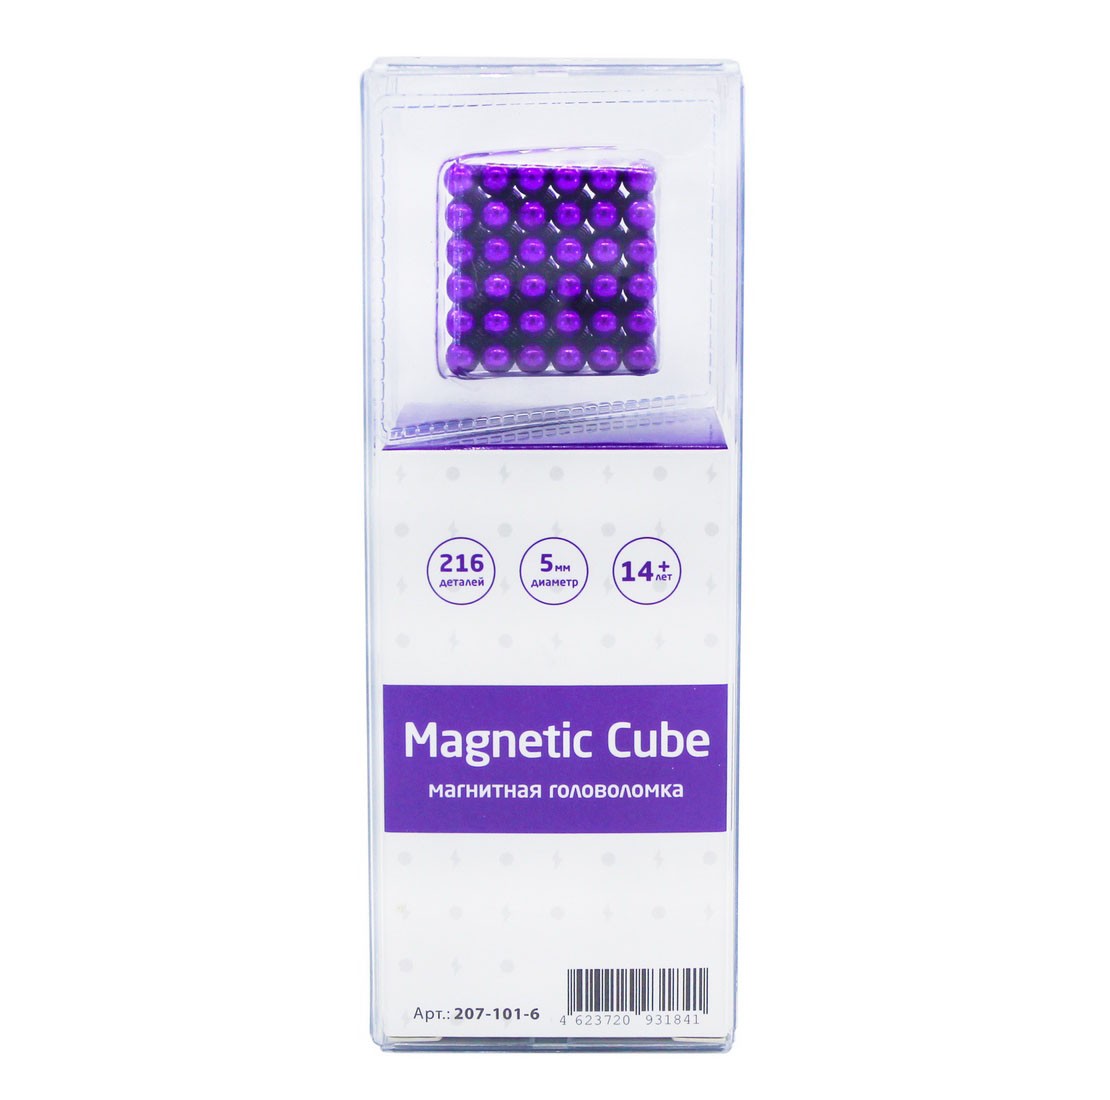 Magnetic Cube, сиреневый, 216 шариков, 5 мм